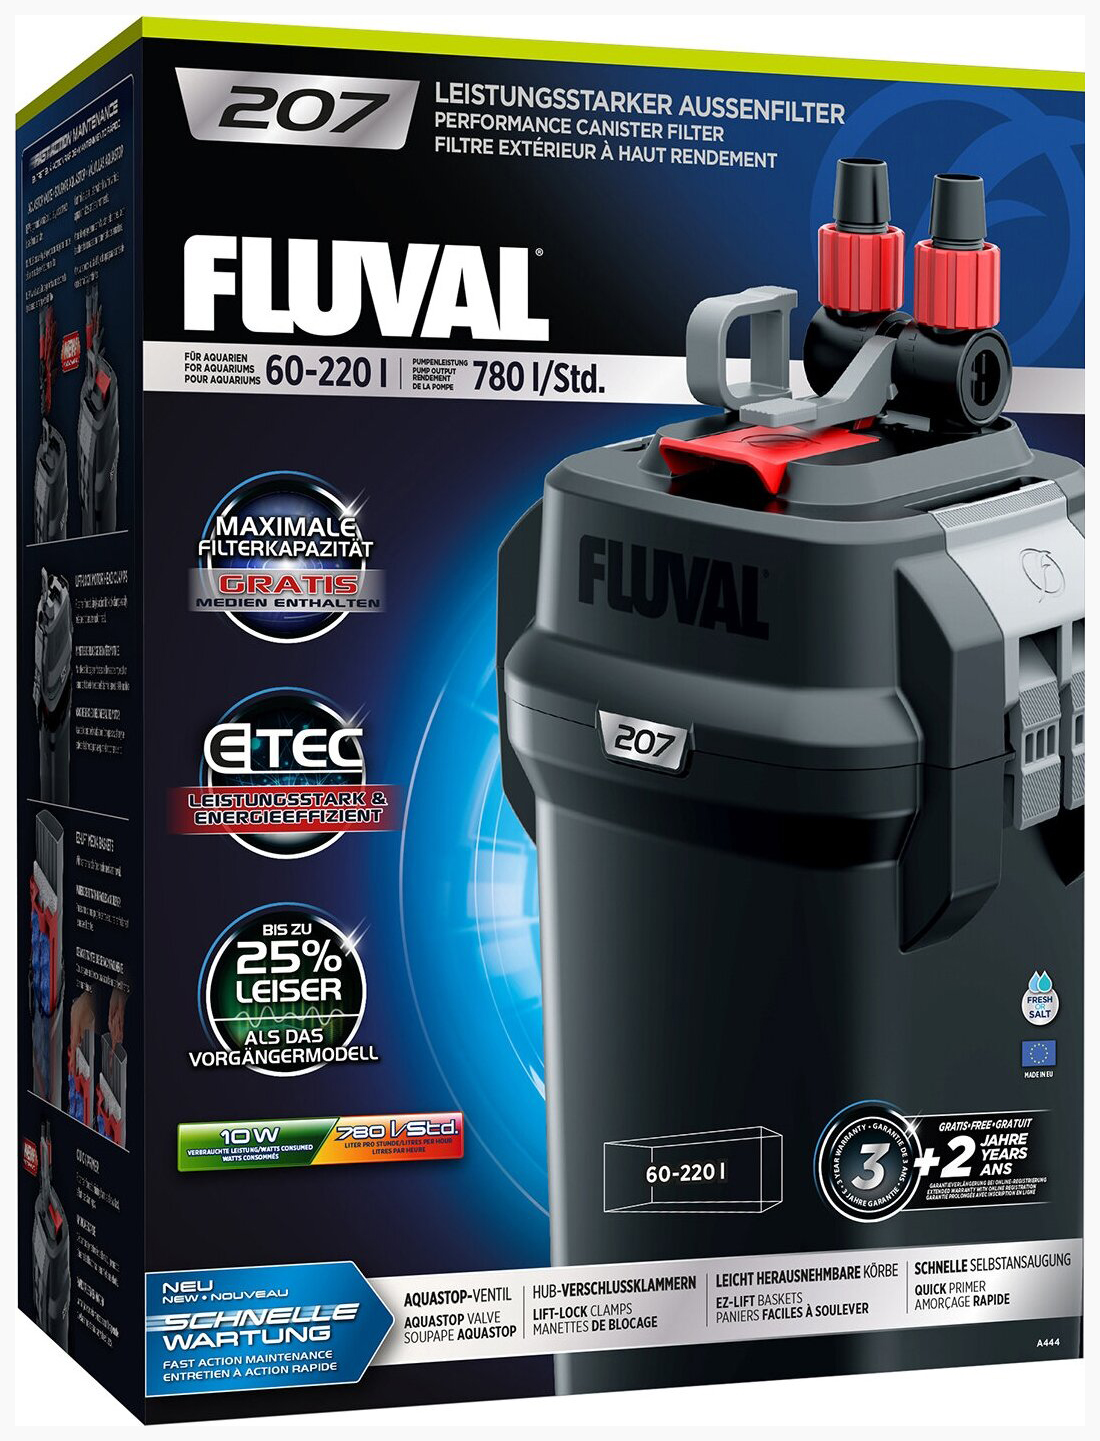 Канистровый внешний фильтр Fluval 207